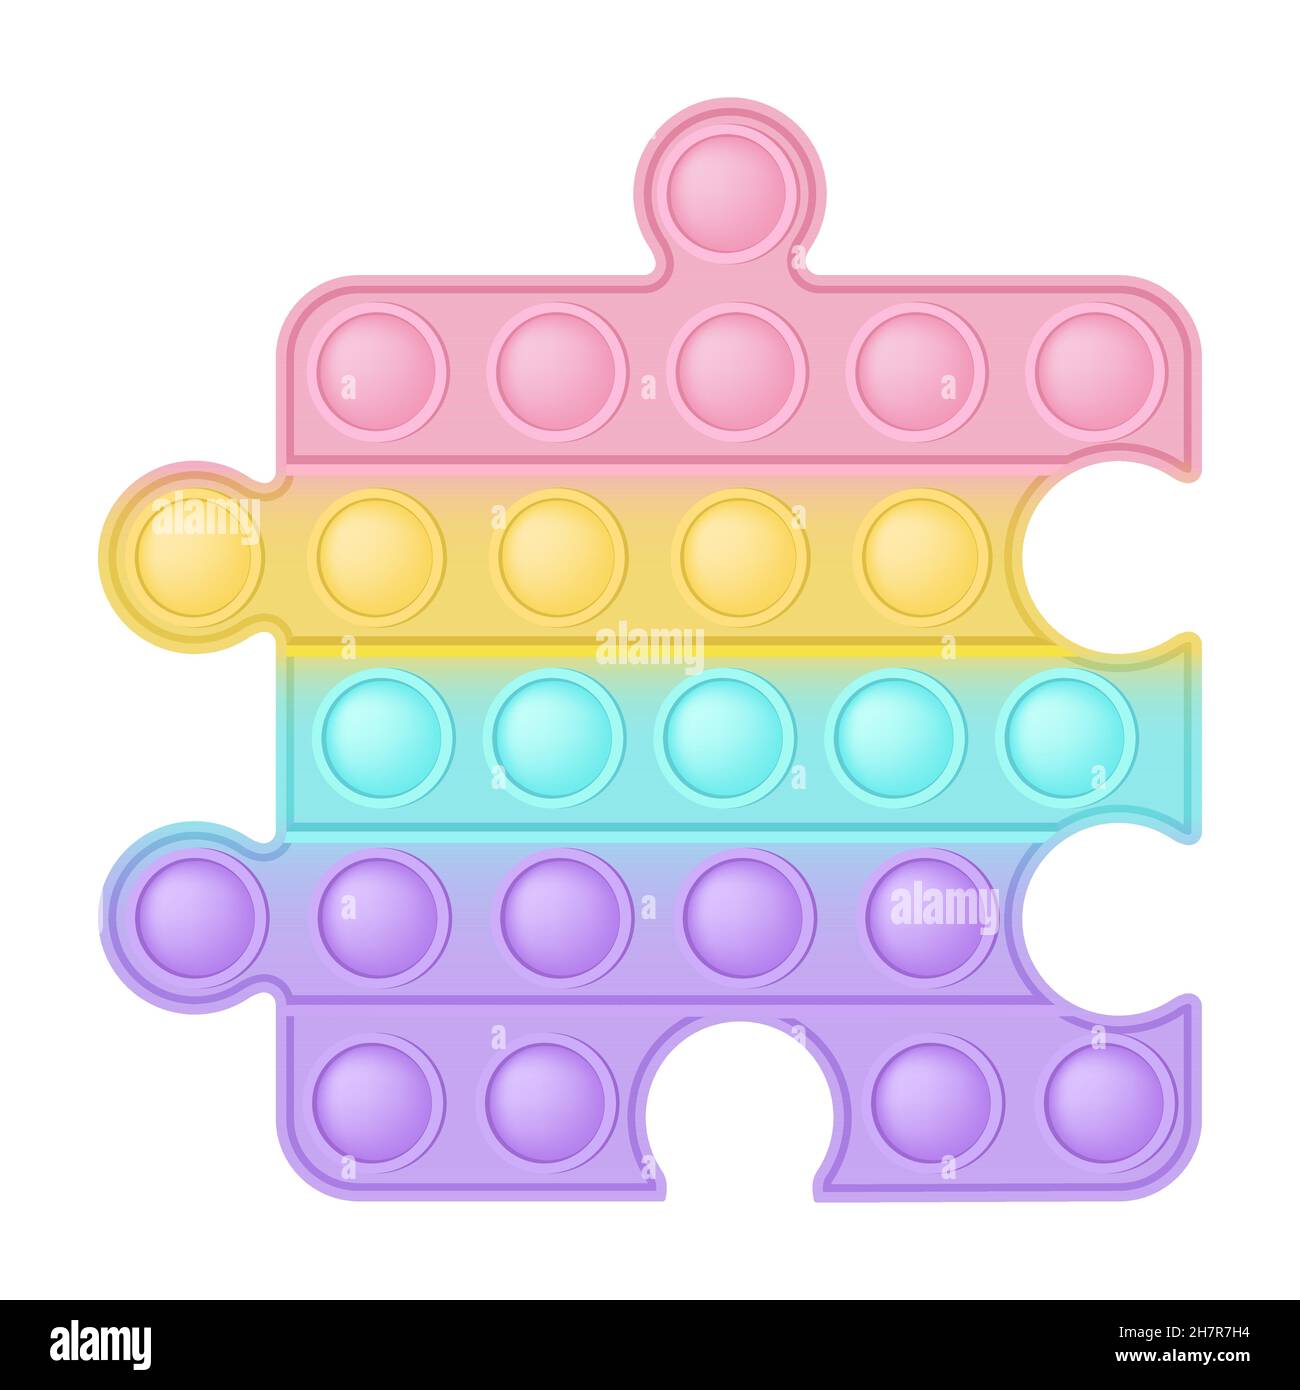 POPIT Figur Puzzle als modisches Silikon-Spielzeug für Fidgets. Süchtig  machendes Anti-Stress-Spielzeug in Pastell-Regenbogenfarben. Blase Angst  Entwicklung Pop it Spielzeug Stock-Vektorgrafik - Alamy